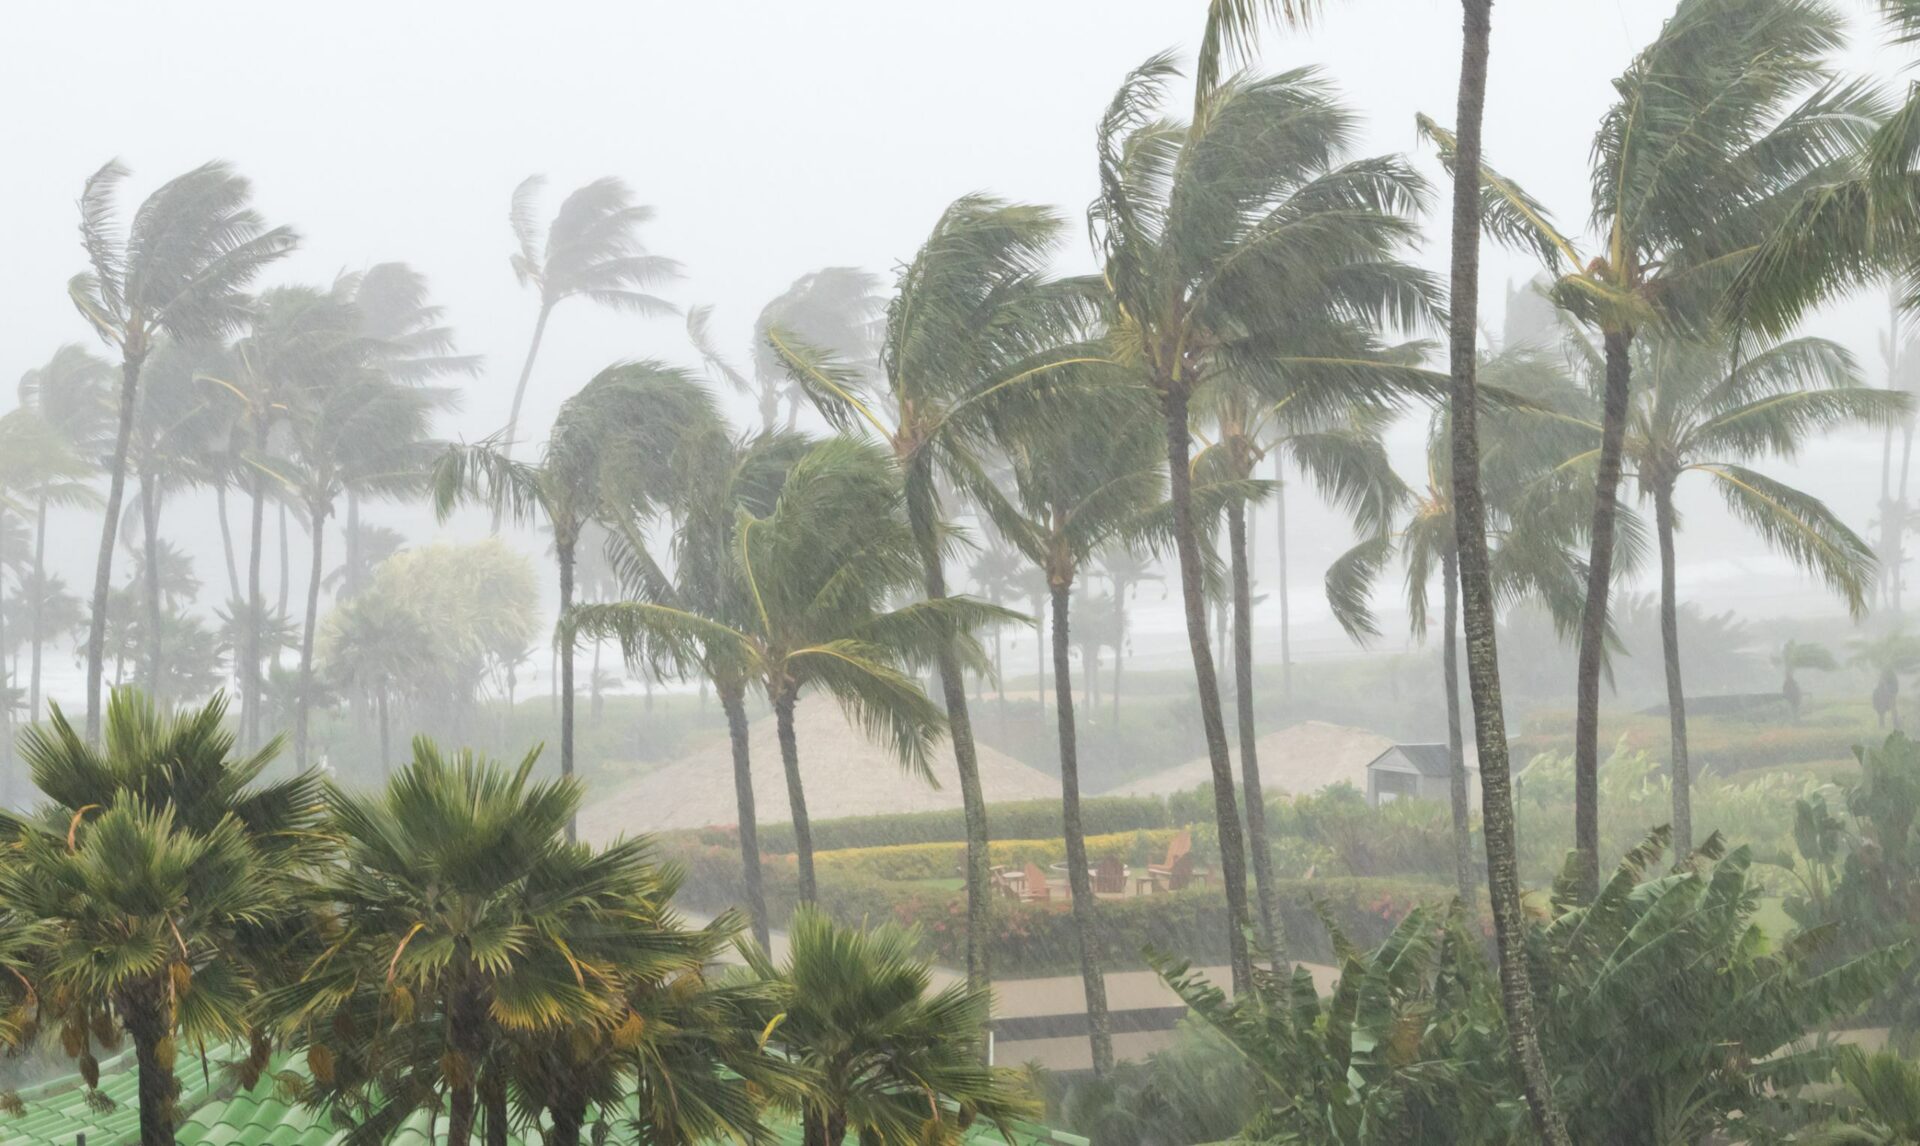 Déménagement à La Réunion : guide de survie pendant les cyclones